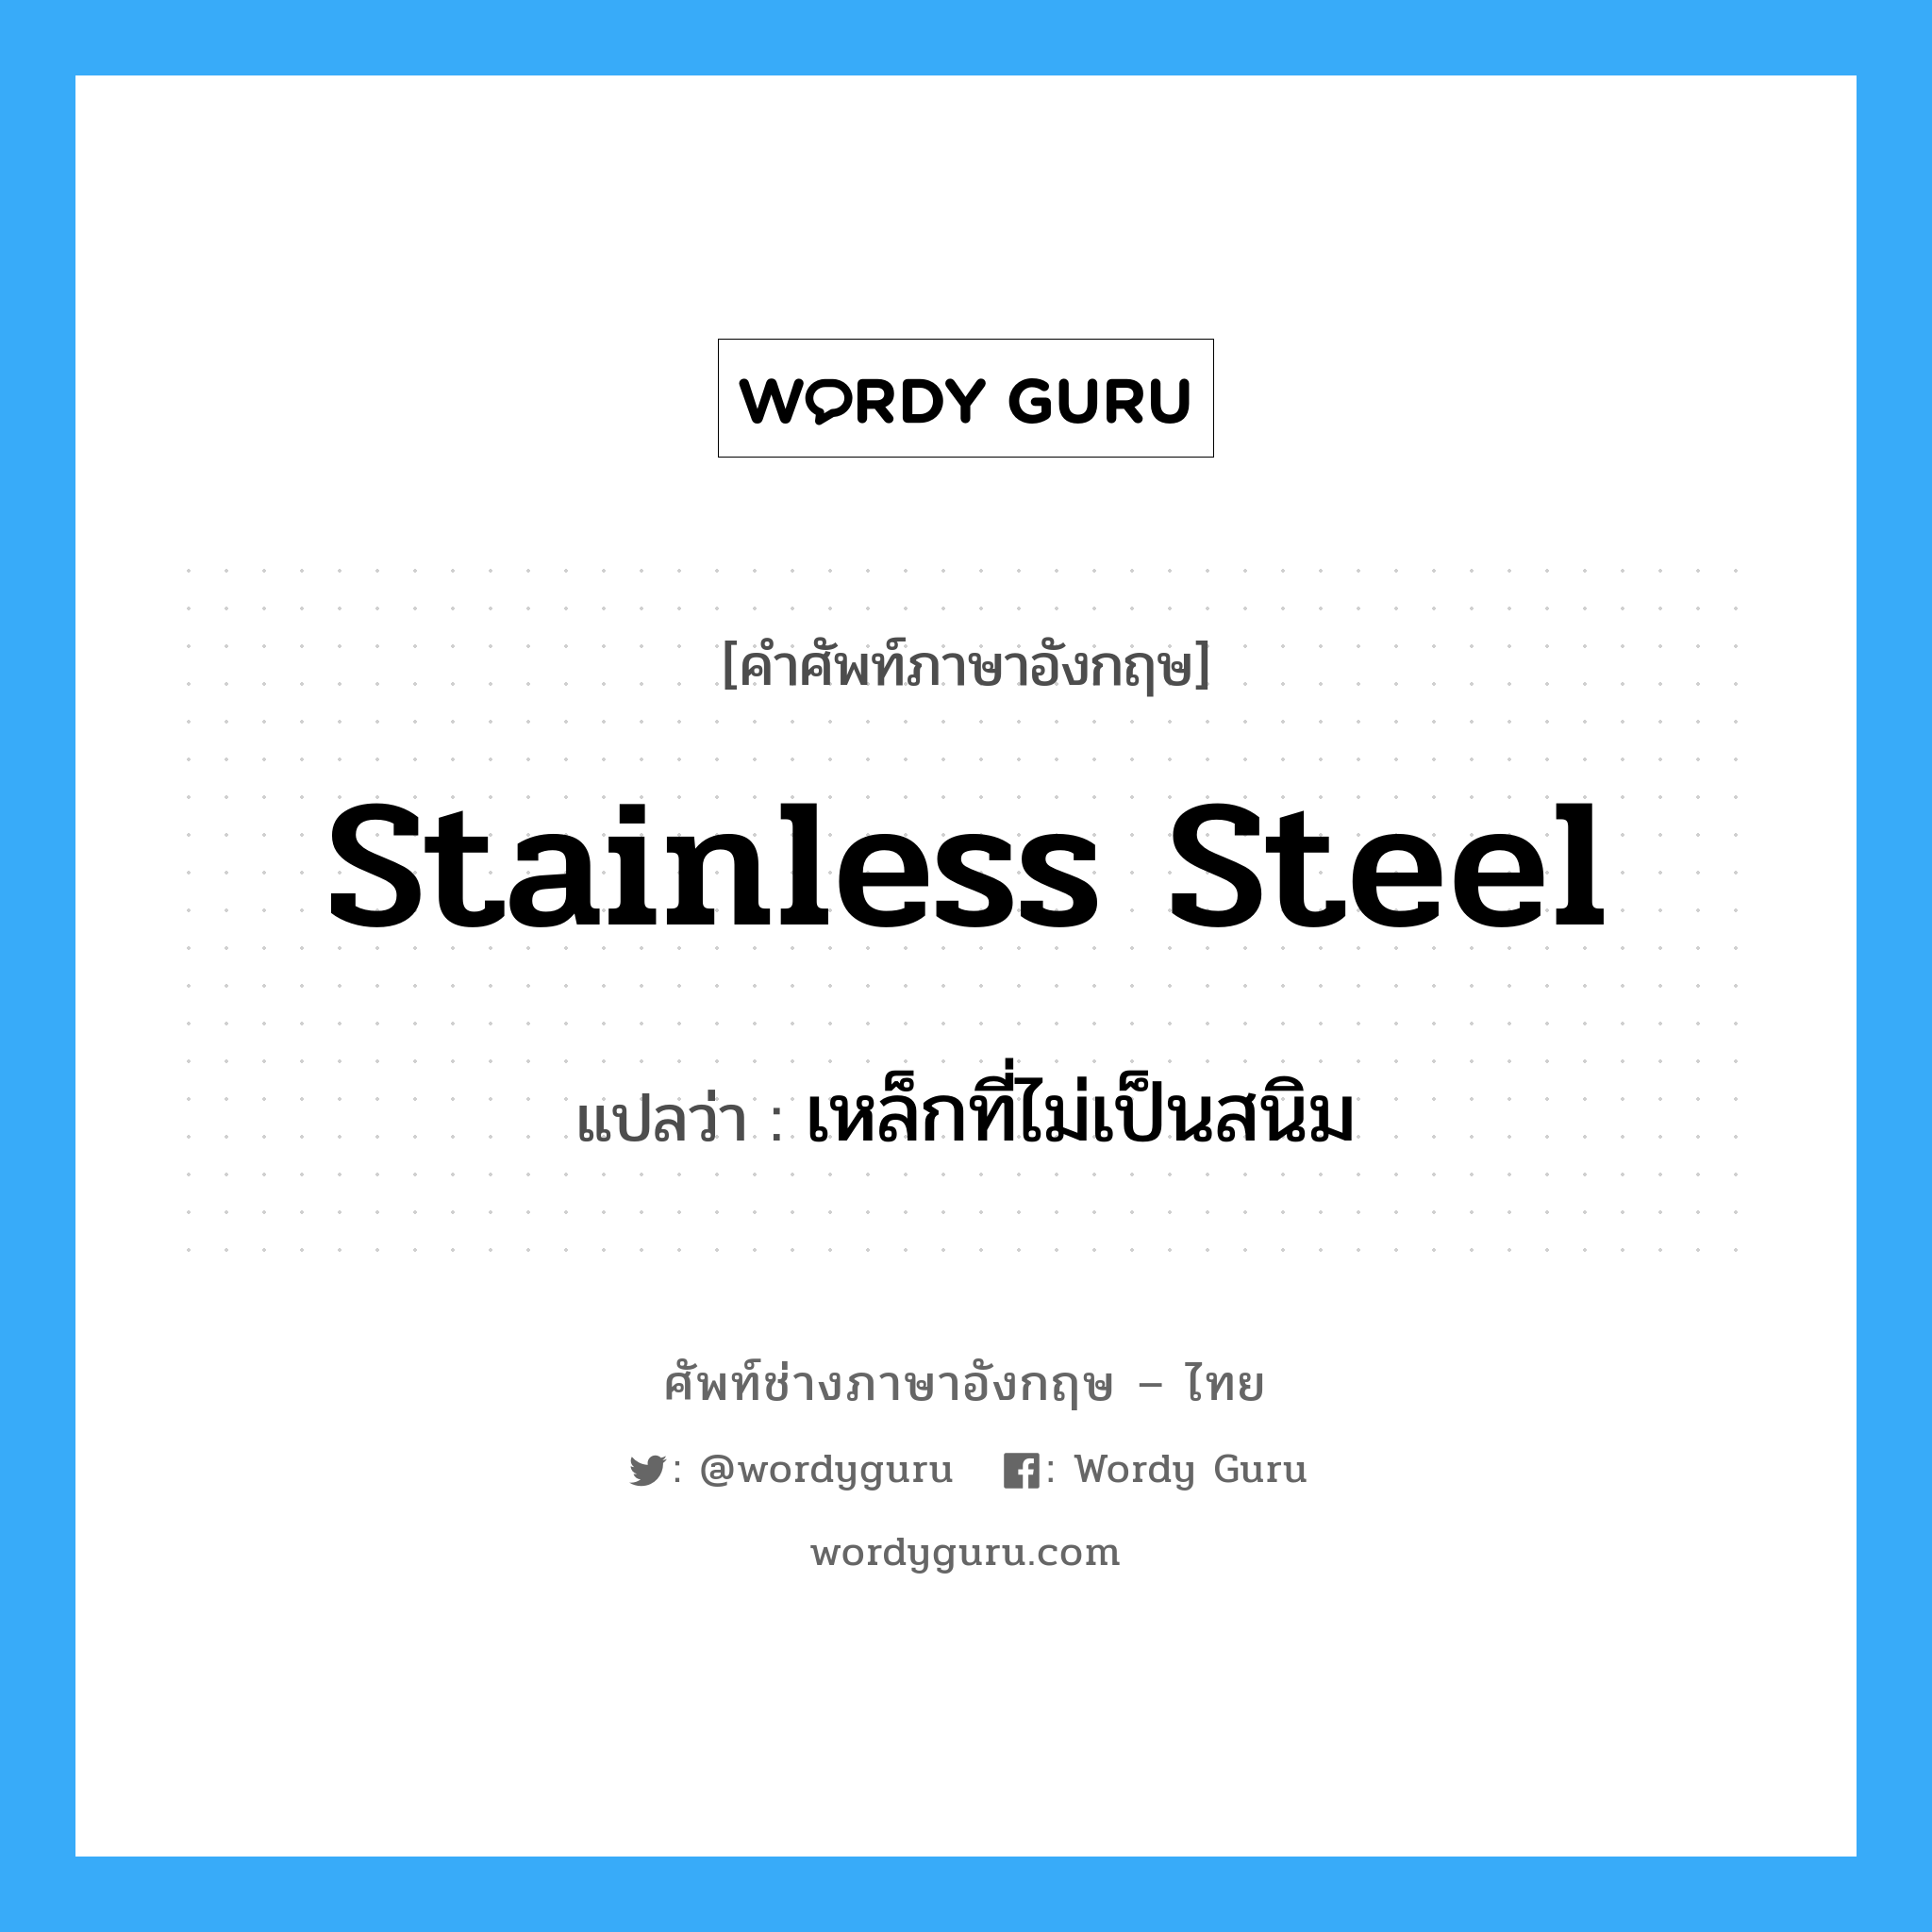 stainless steel แปลว่า?, คำศัพท์ช่างภาษาอังกฤษ - ไทย stainless steel คำศัพท์ภาษาอังกฤษ stainless steel แปลว่า เหล็กที่ไม่เป็นสนิม